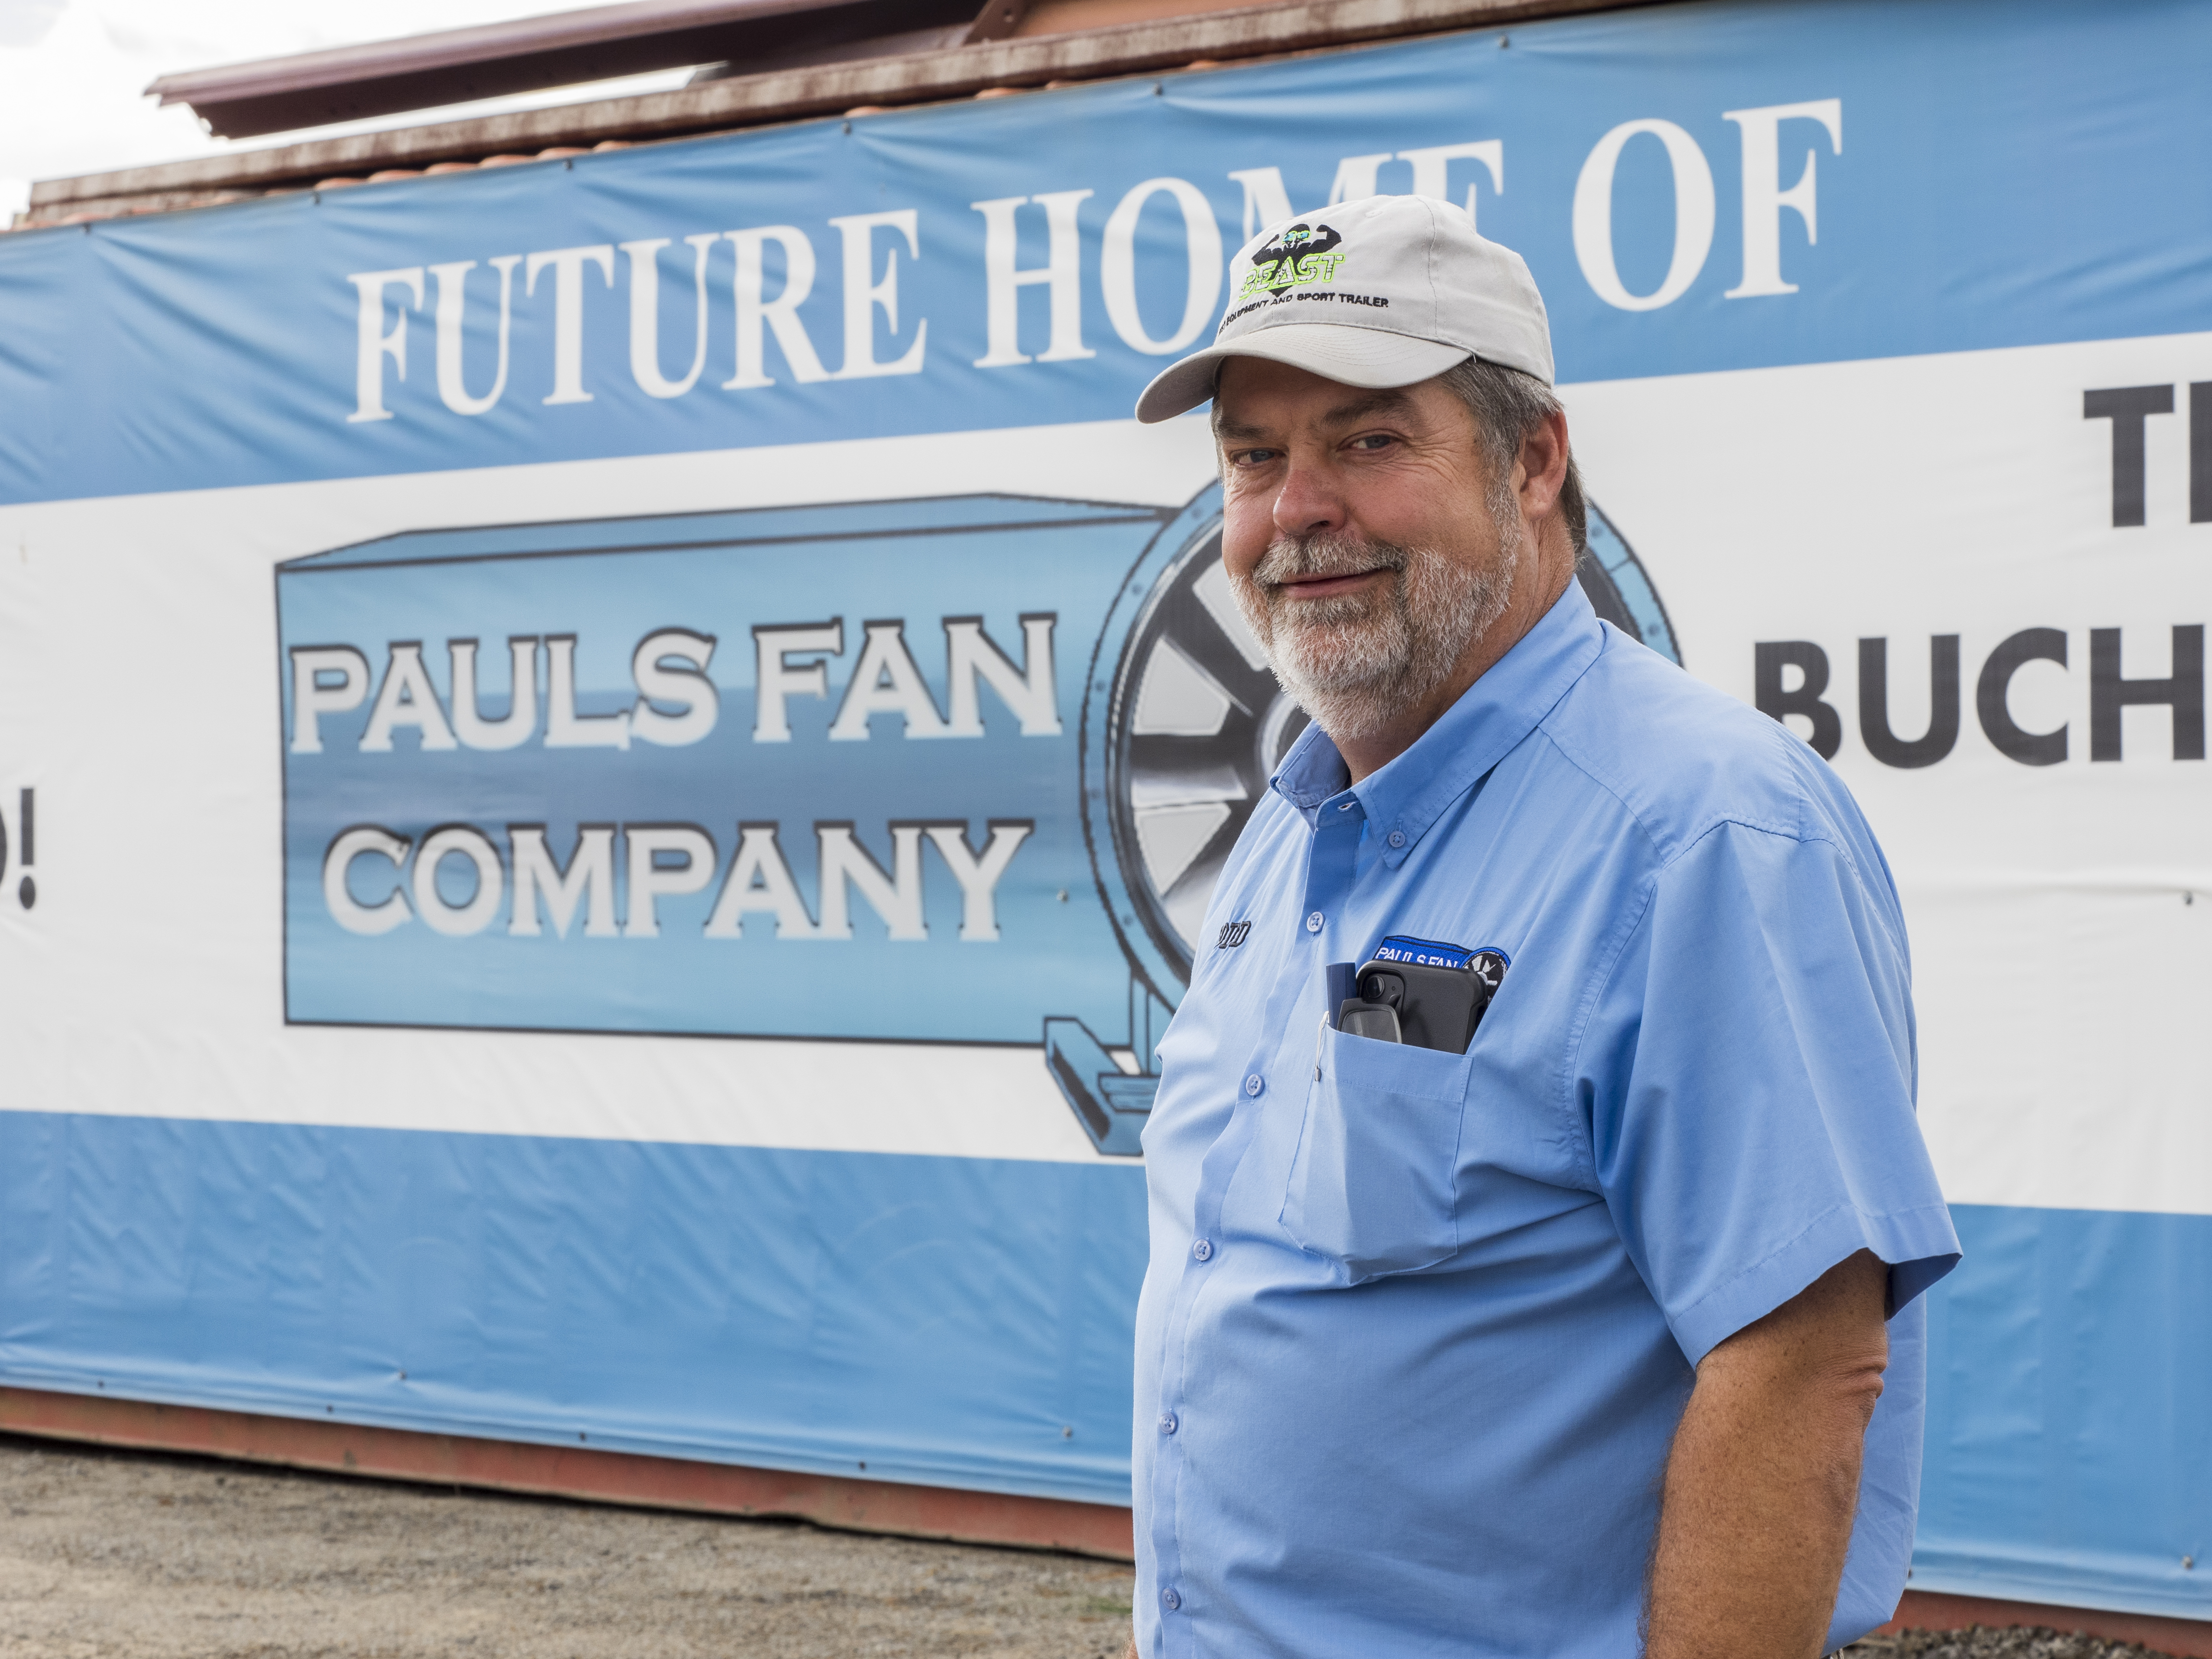 Paul's Fan Company, Buchanan County